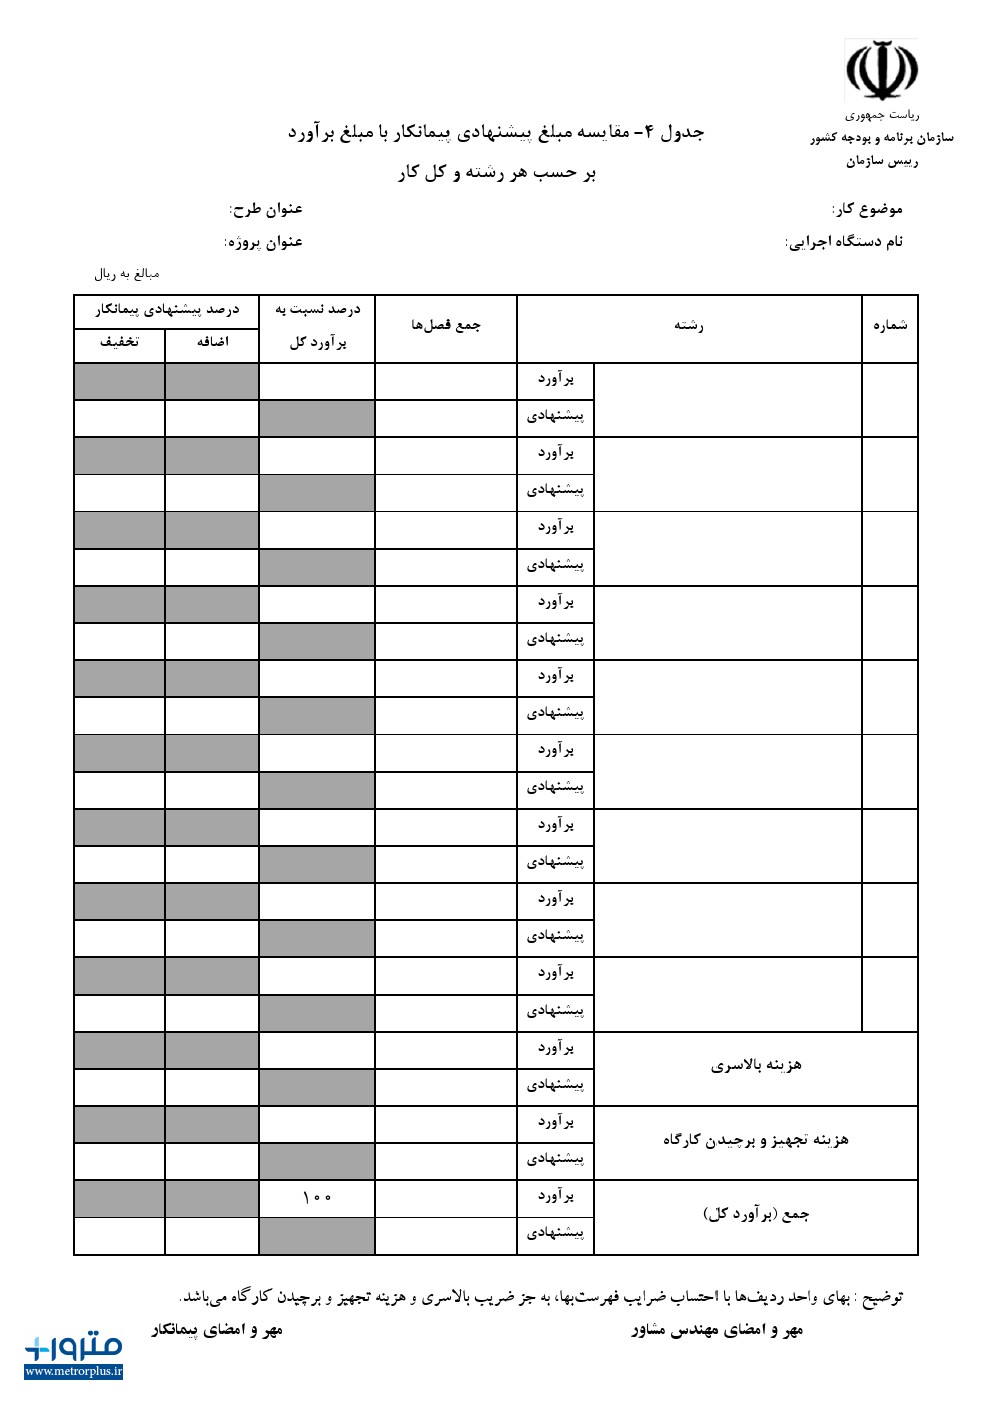 جدول 4 - مقایسه مبلغ پیشنهادی پیمانکار با مبلغ برآورد بر حسب هر رشته و کل کار